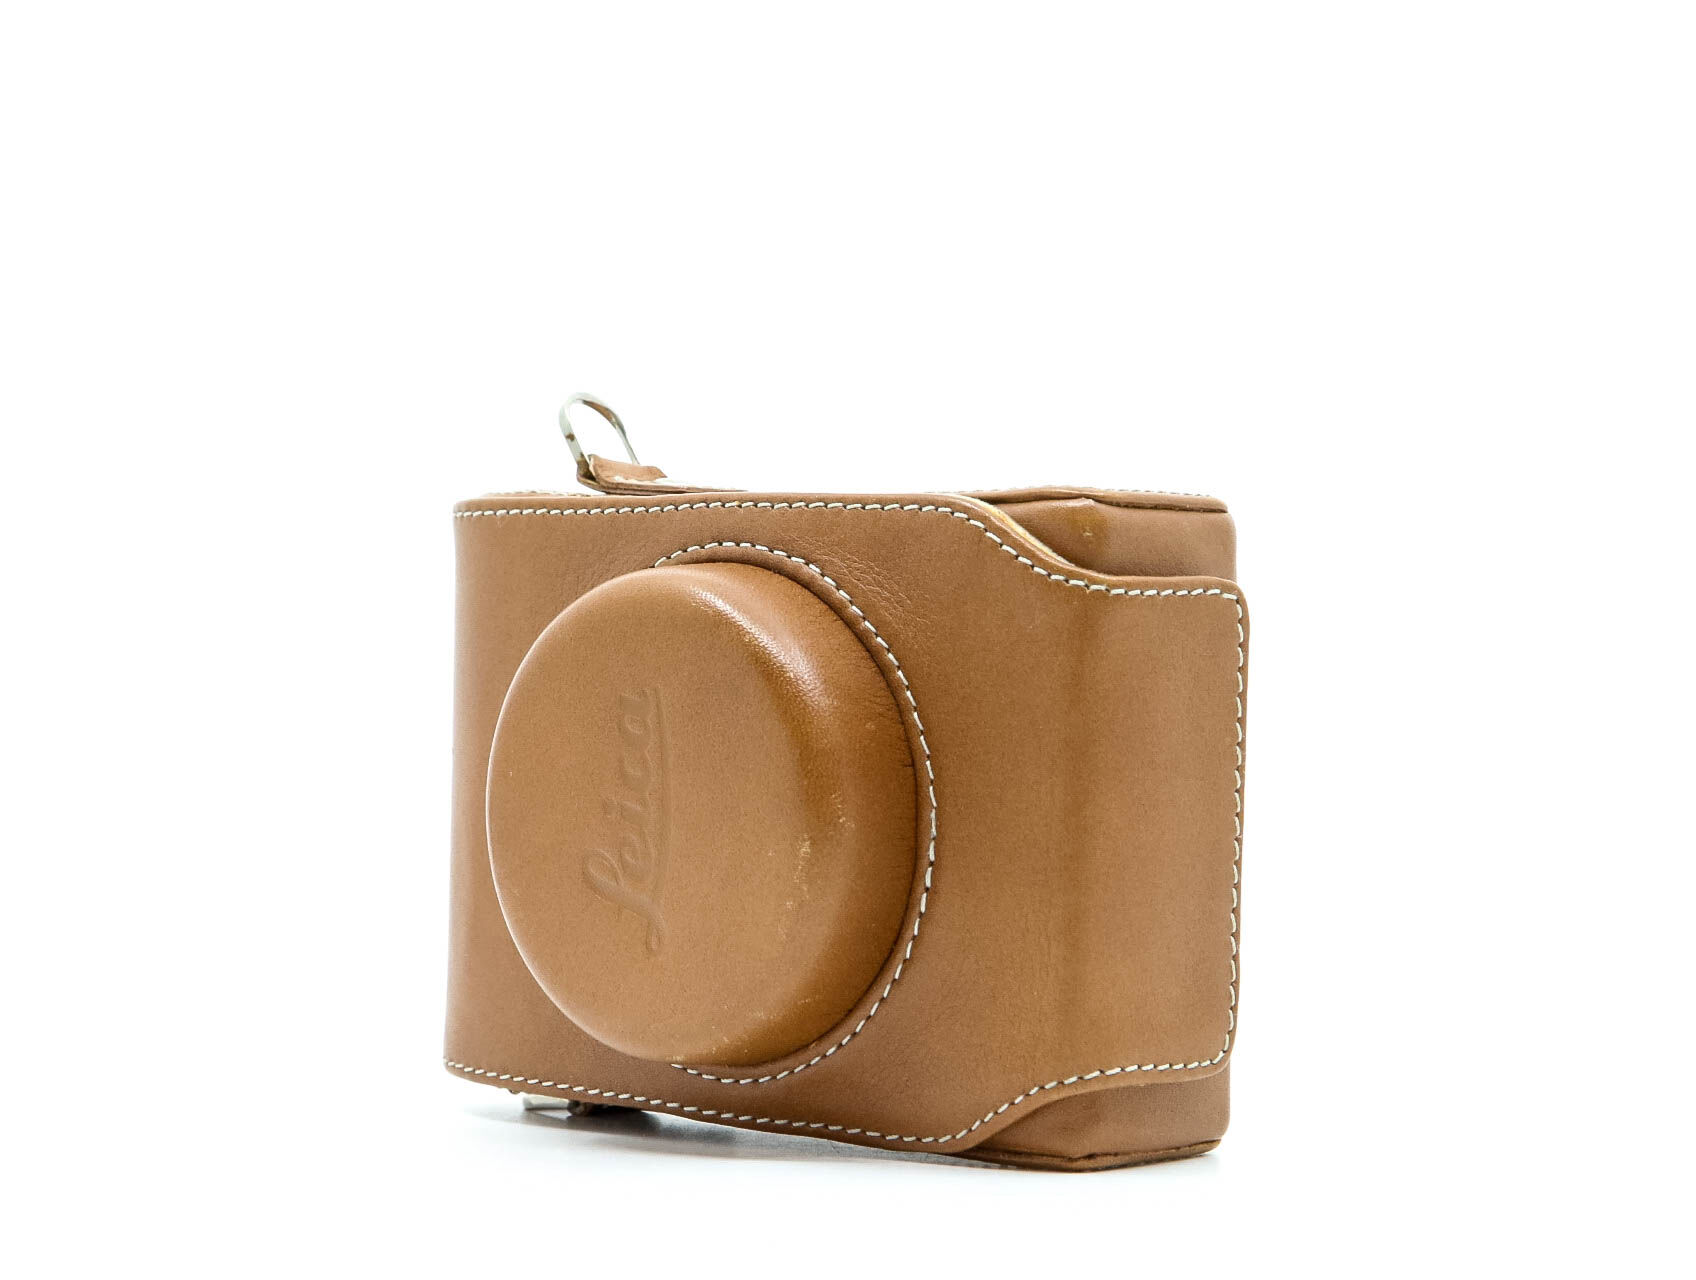 Leica D-Lux 6 Leather Case (Condition: Excellent)